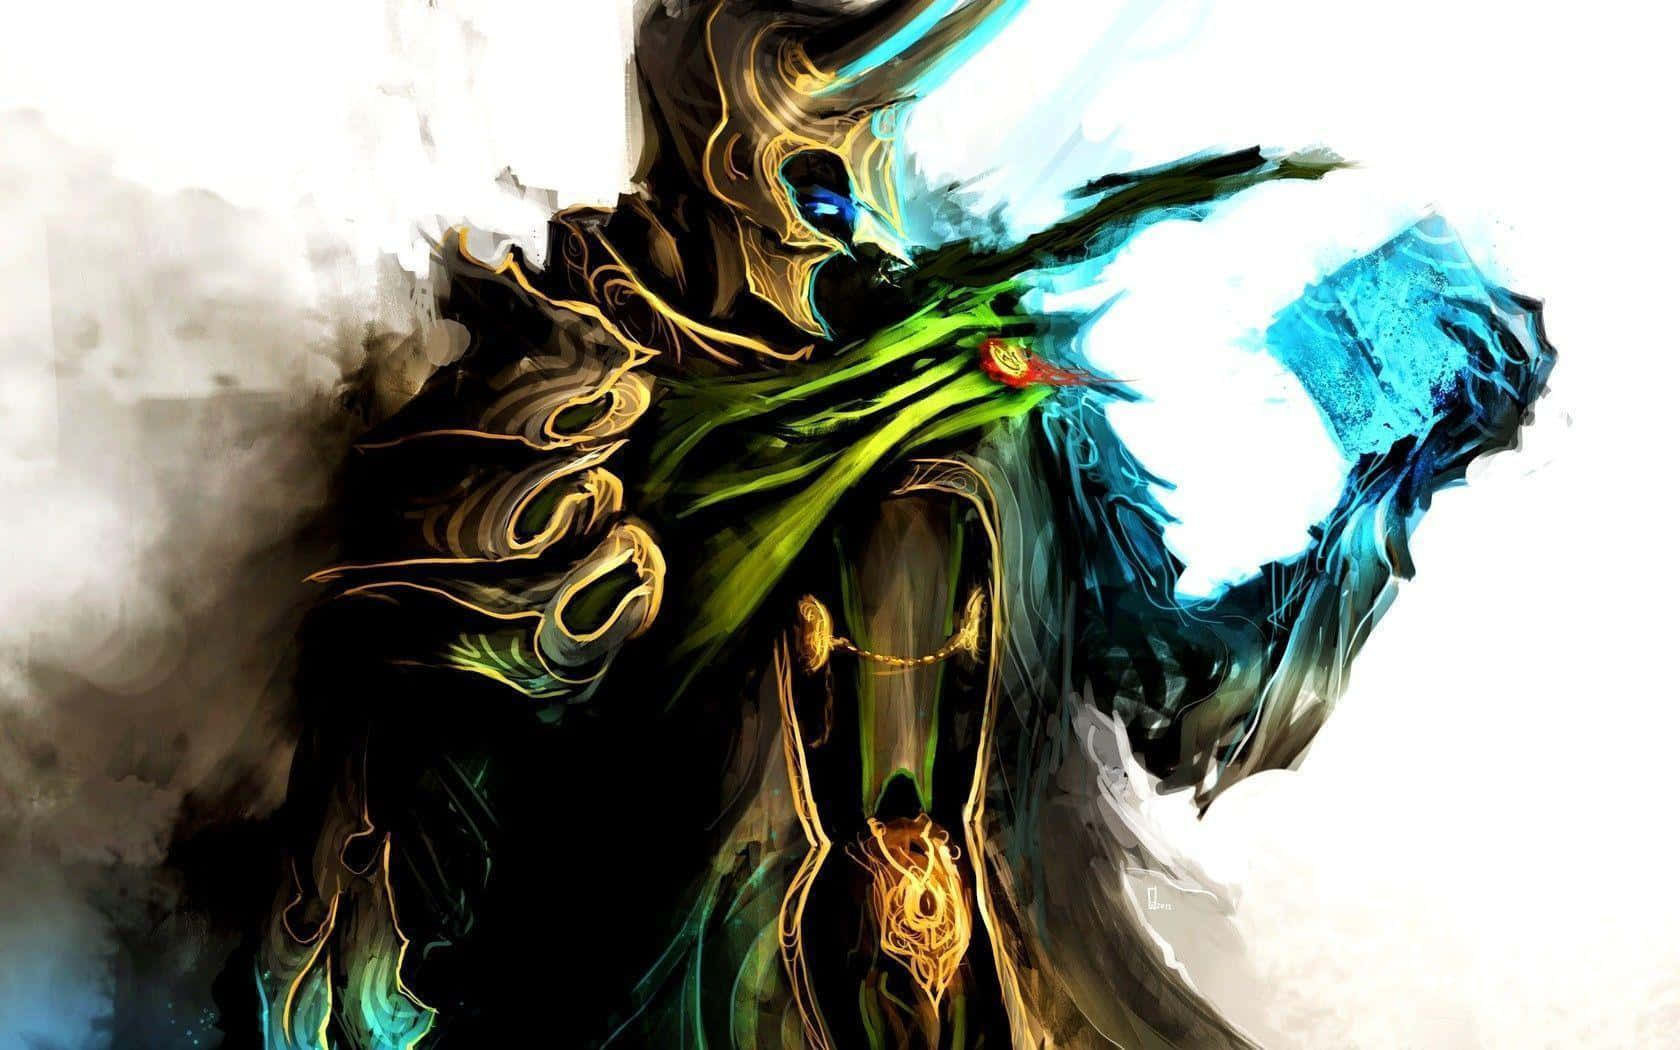 Ilfiglio Adottivo Di Odin, Loki, Nella Classica Storia A Fumetti Della Marvel. Sfondo